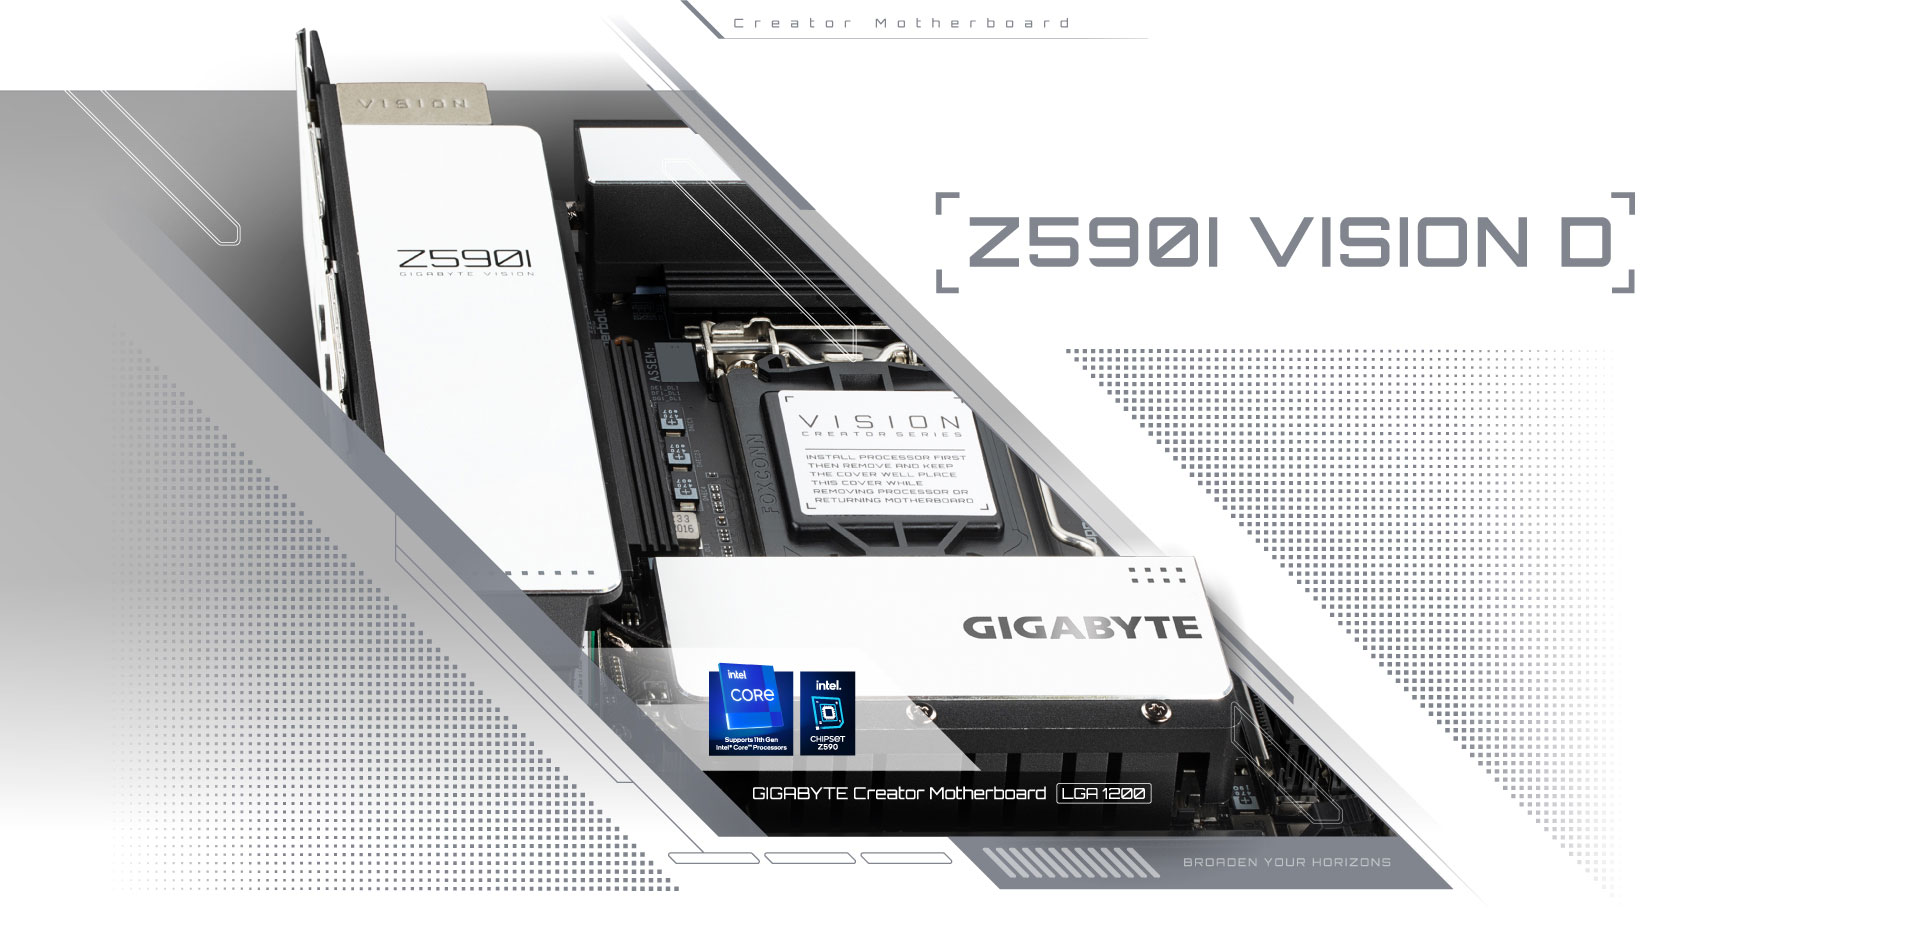 Z590I VISION D (rev. 1.0) Key Features | Motherboard - GIGABYTE U.S.A.